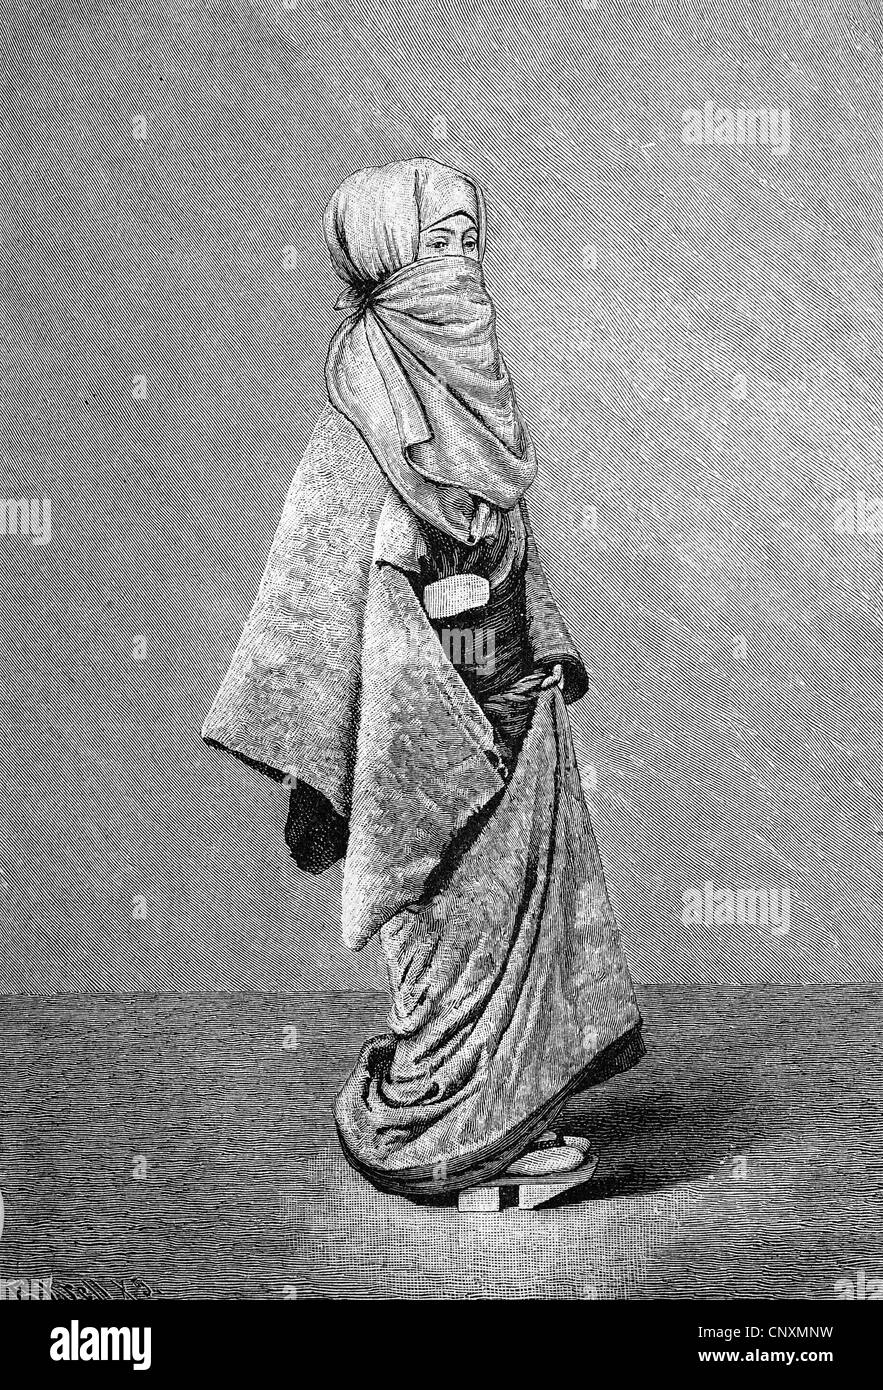 La vie des femmes japonaises, des vêtements d'hiver d'une Japonaise, historique de la gravure, 1883 Banque D'Images